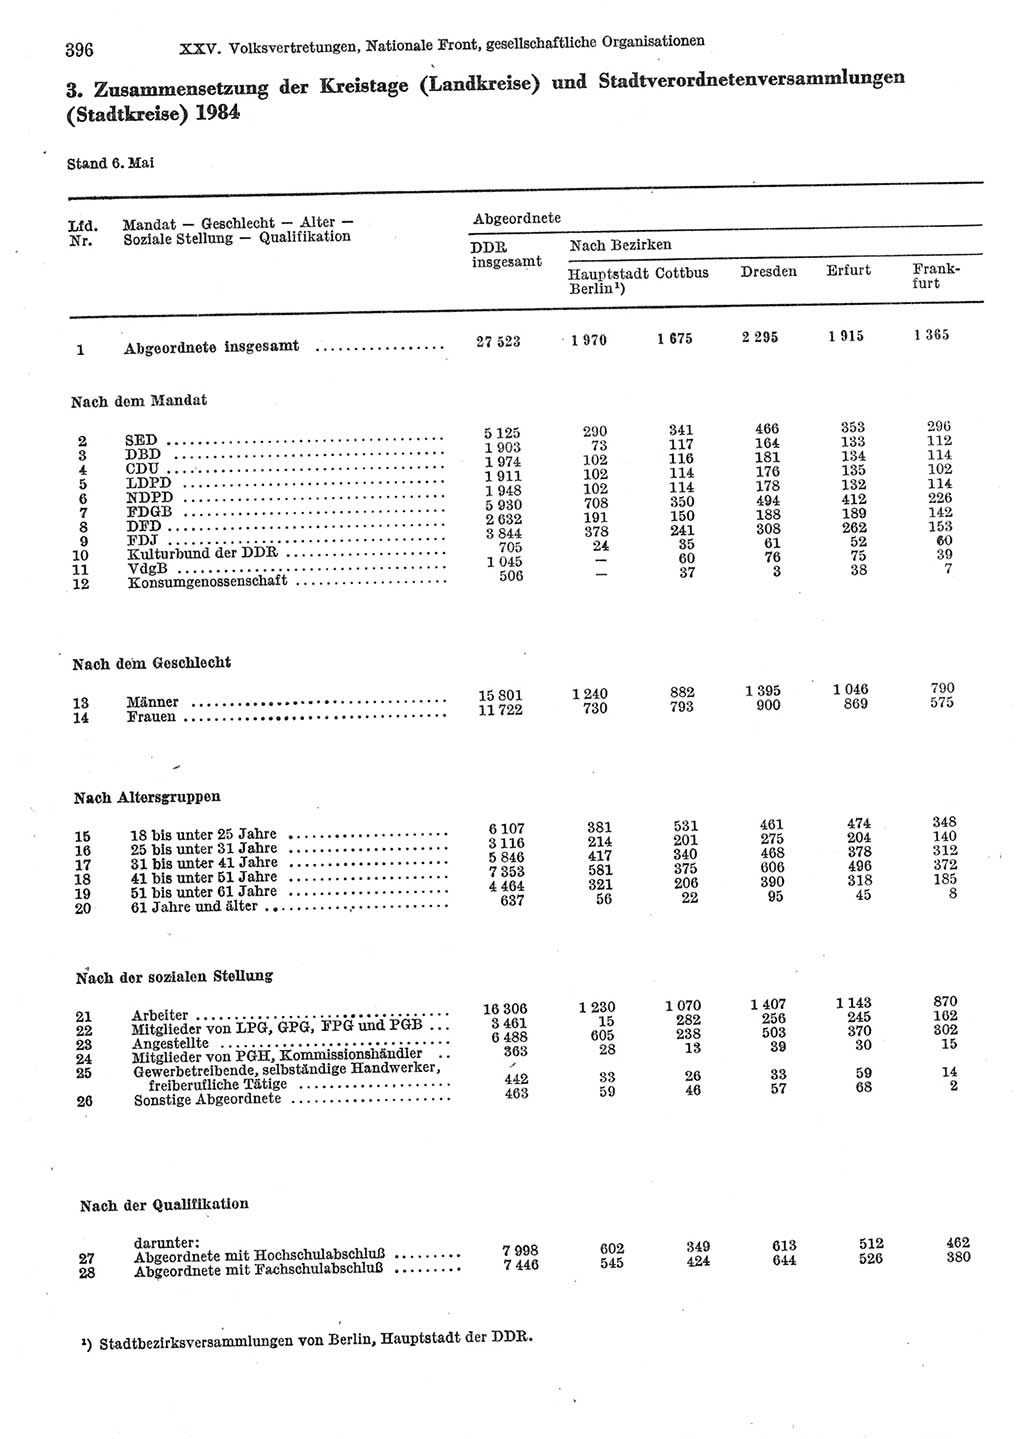 Statistisches Jahrbuch der Deutschen Demokratischen Republik (DDR) 1985, Seite 396 (Stat. Jb. DDR 1985, S. 396)